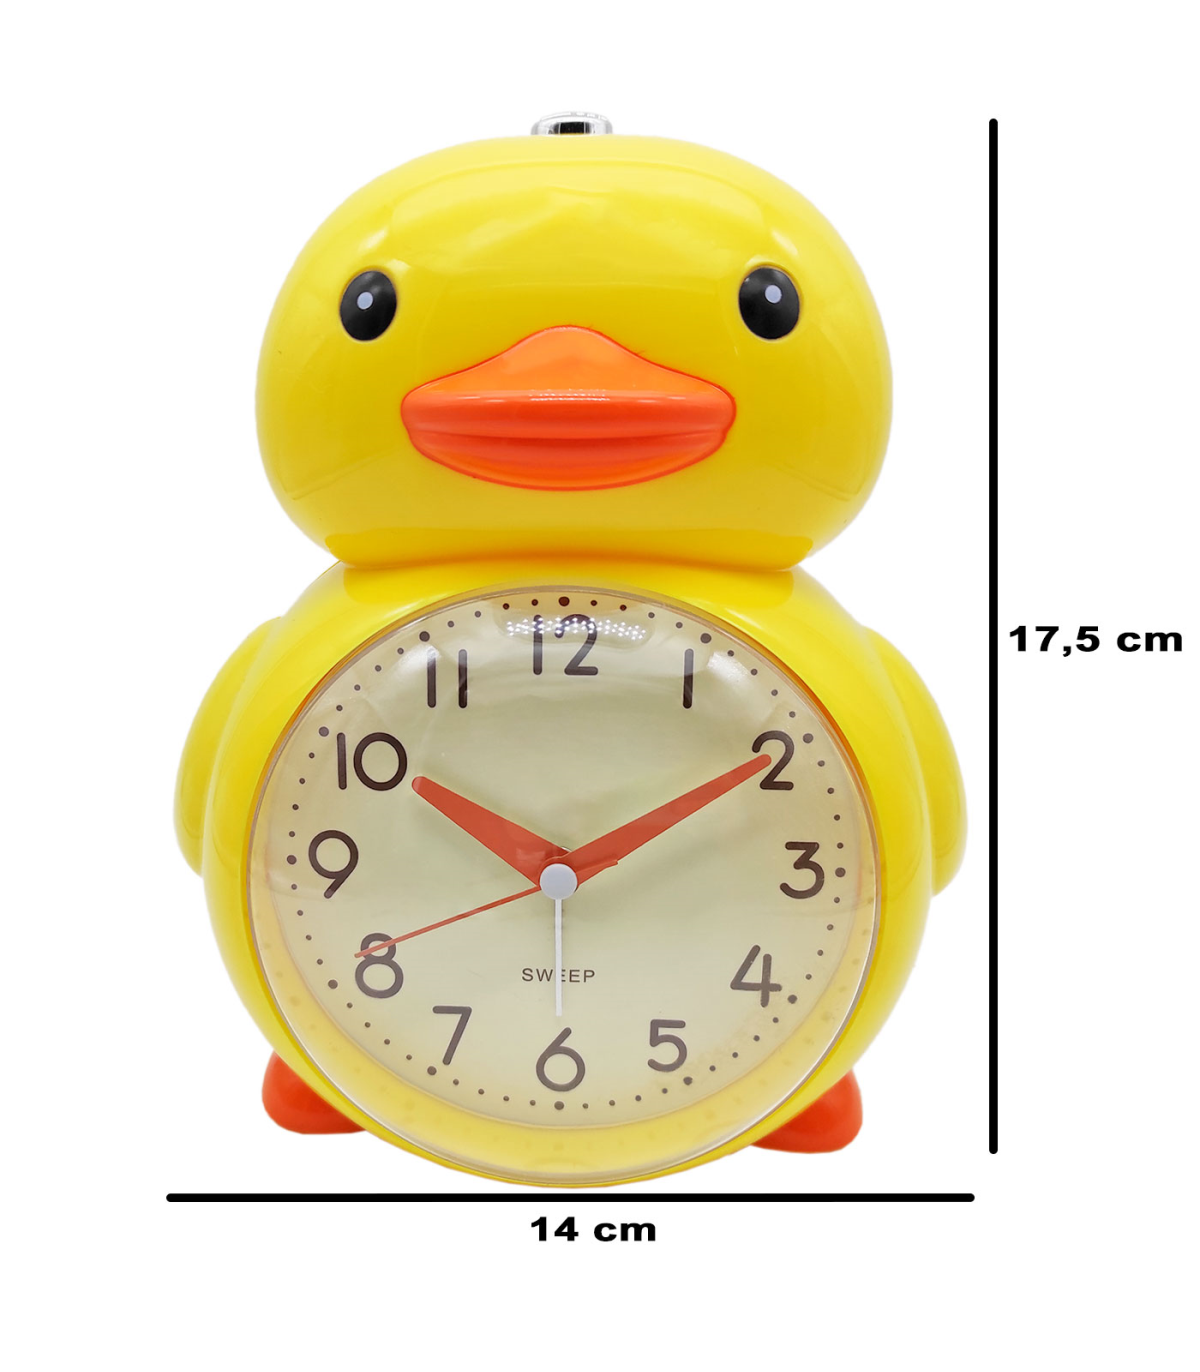 Tradineur - Reloj infantil analógico, despertador con diseño de dinosaurio  - Multifunciones - Fabricado en plástico resistente 